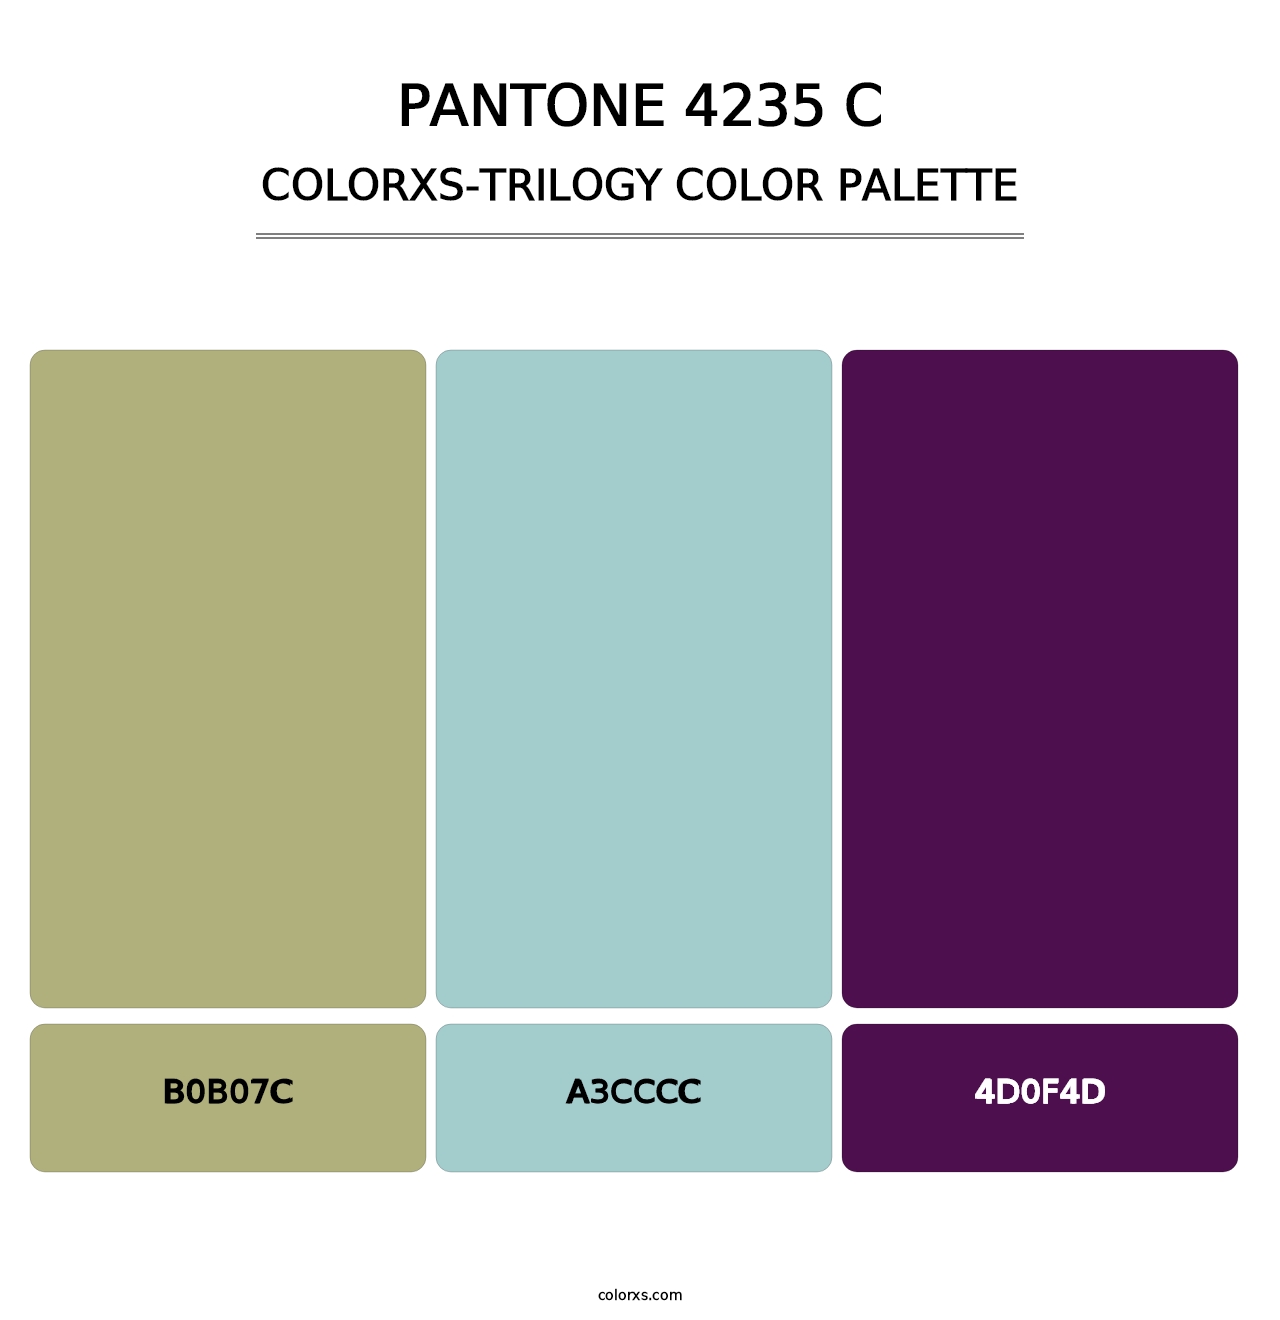 PANTONE 4235 C - Colorxs Trilogy Palette